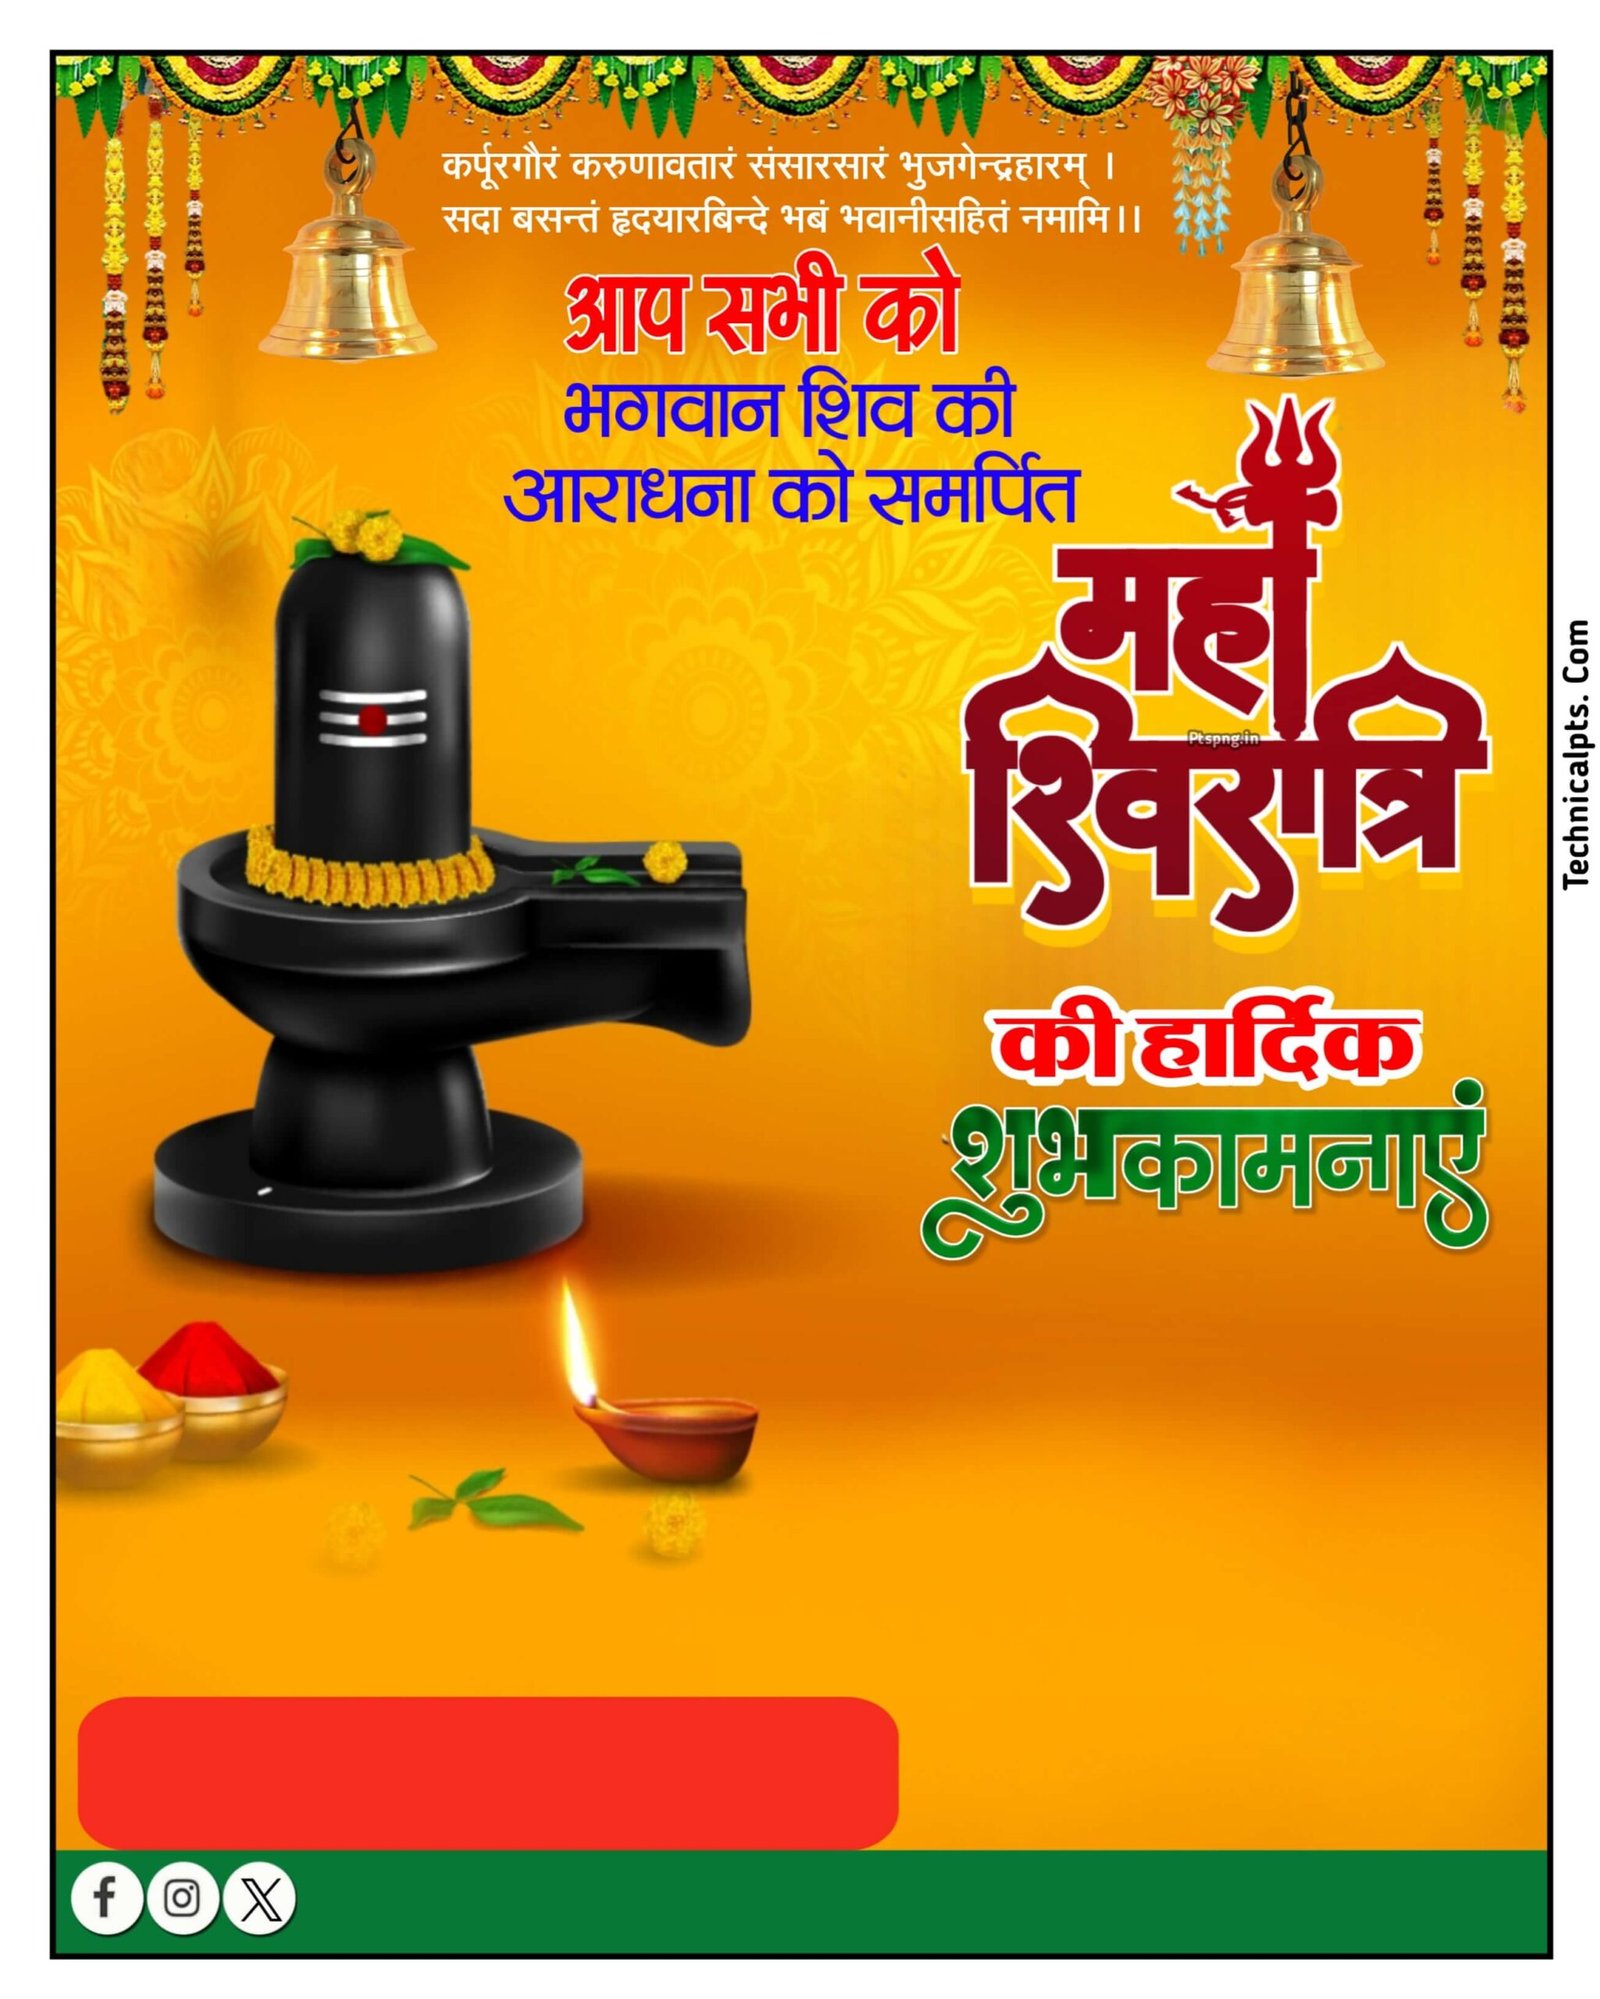 महाशिवरात्रि का पोस्टर कैसे बनाएं मोबाइल से| Mahashivratri banner editing | Mahashivratri banner editing background image download